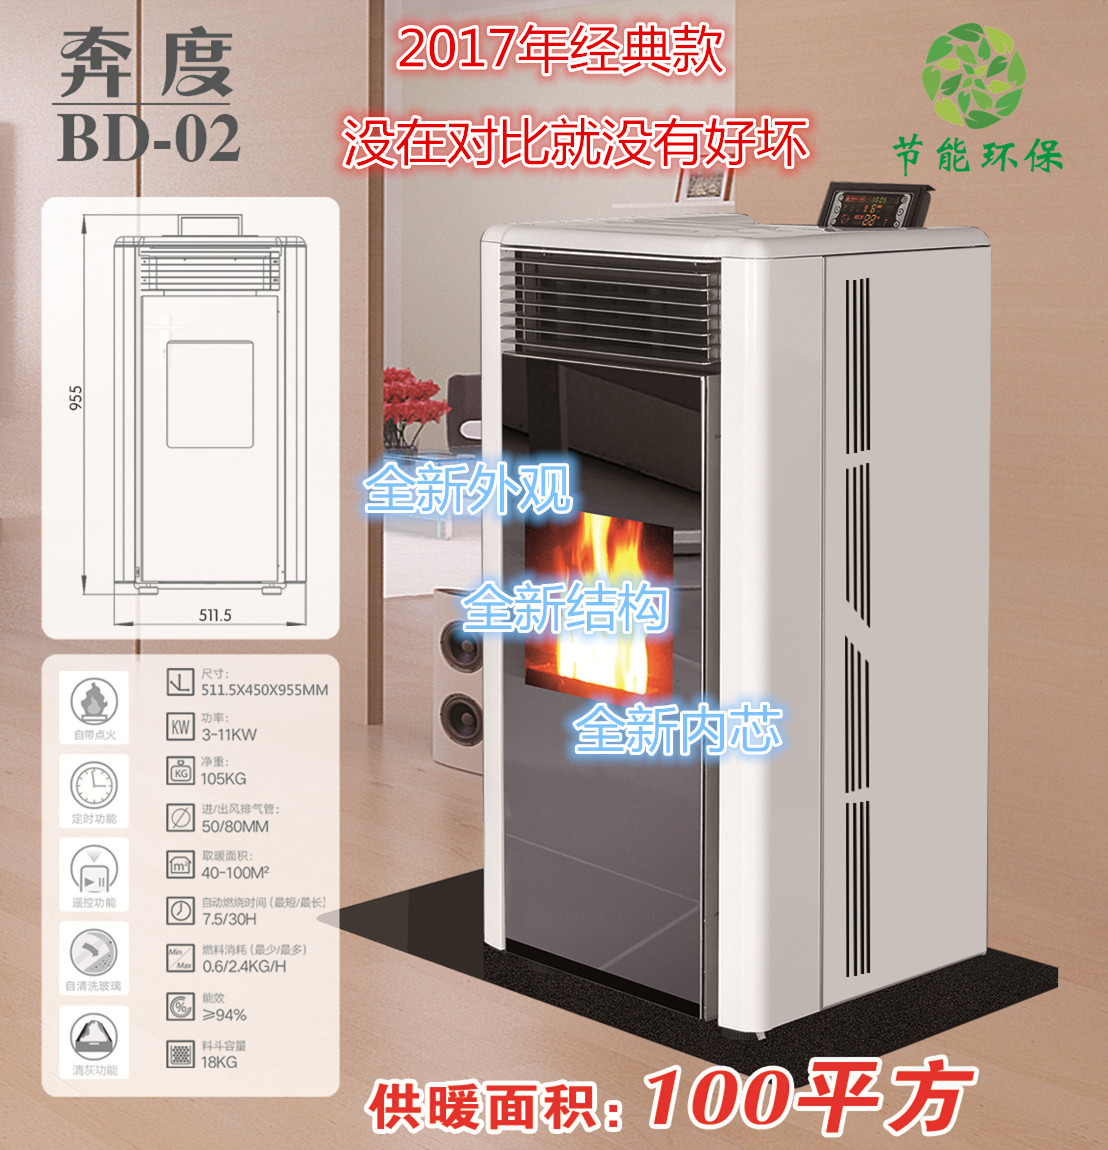 生物质颗粒壁炉、生物质颗粒取暖炉、奔度颗粒取暖炉BD02